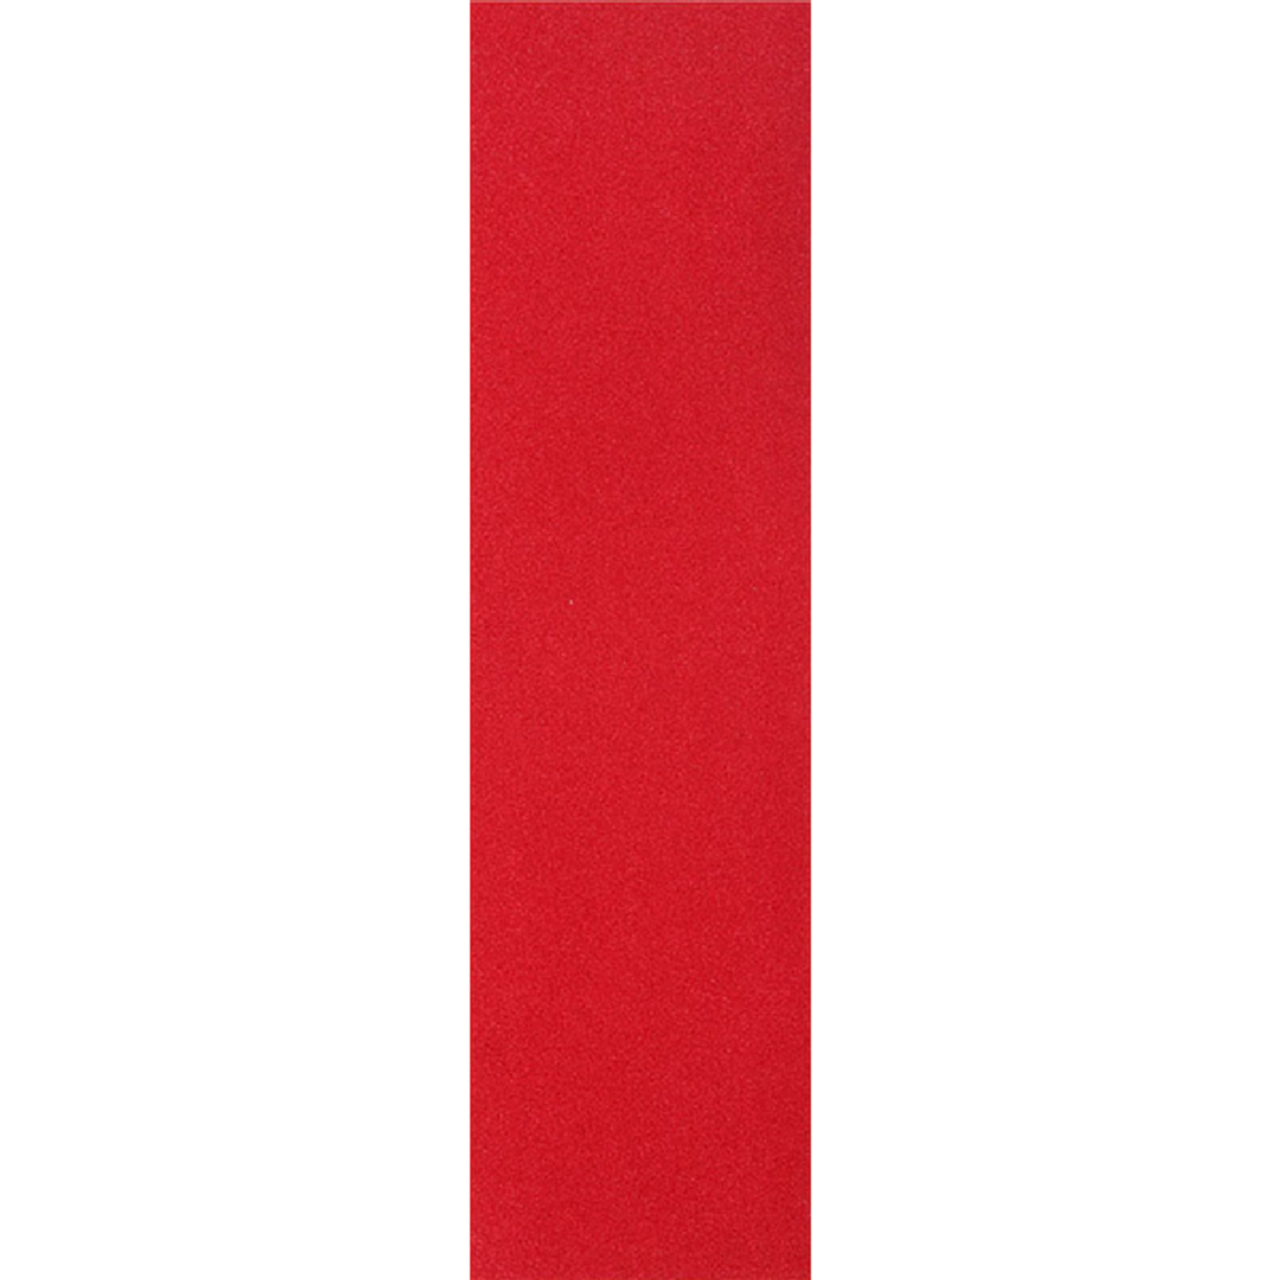 Jessup Single Sheet Grip Tape Sheet Red 9x33